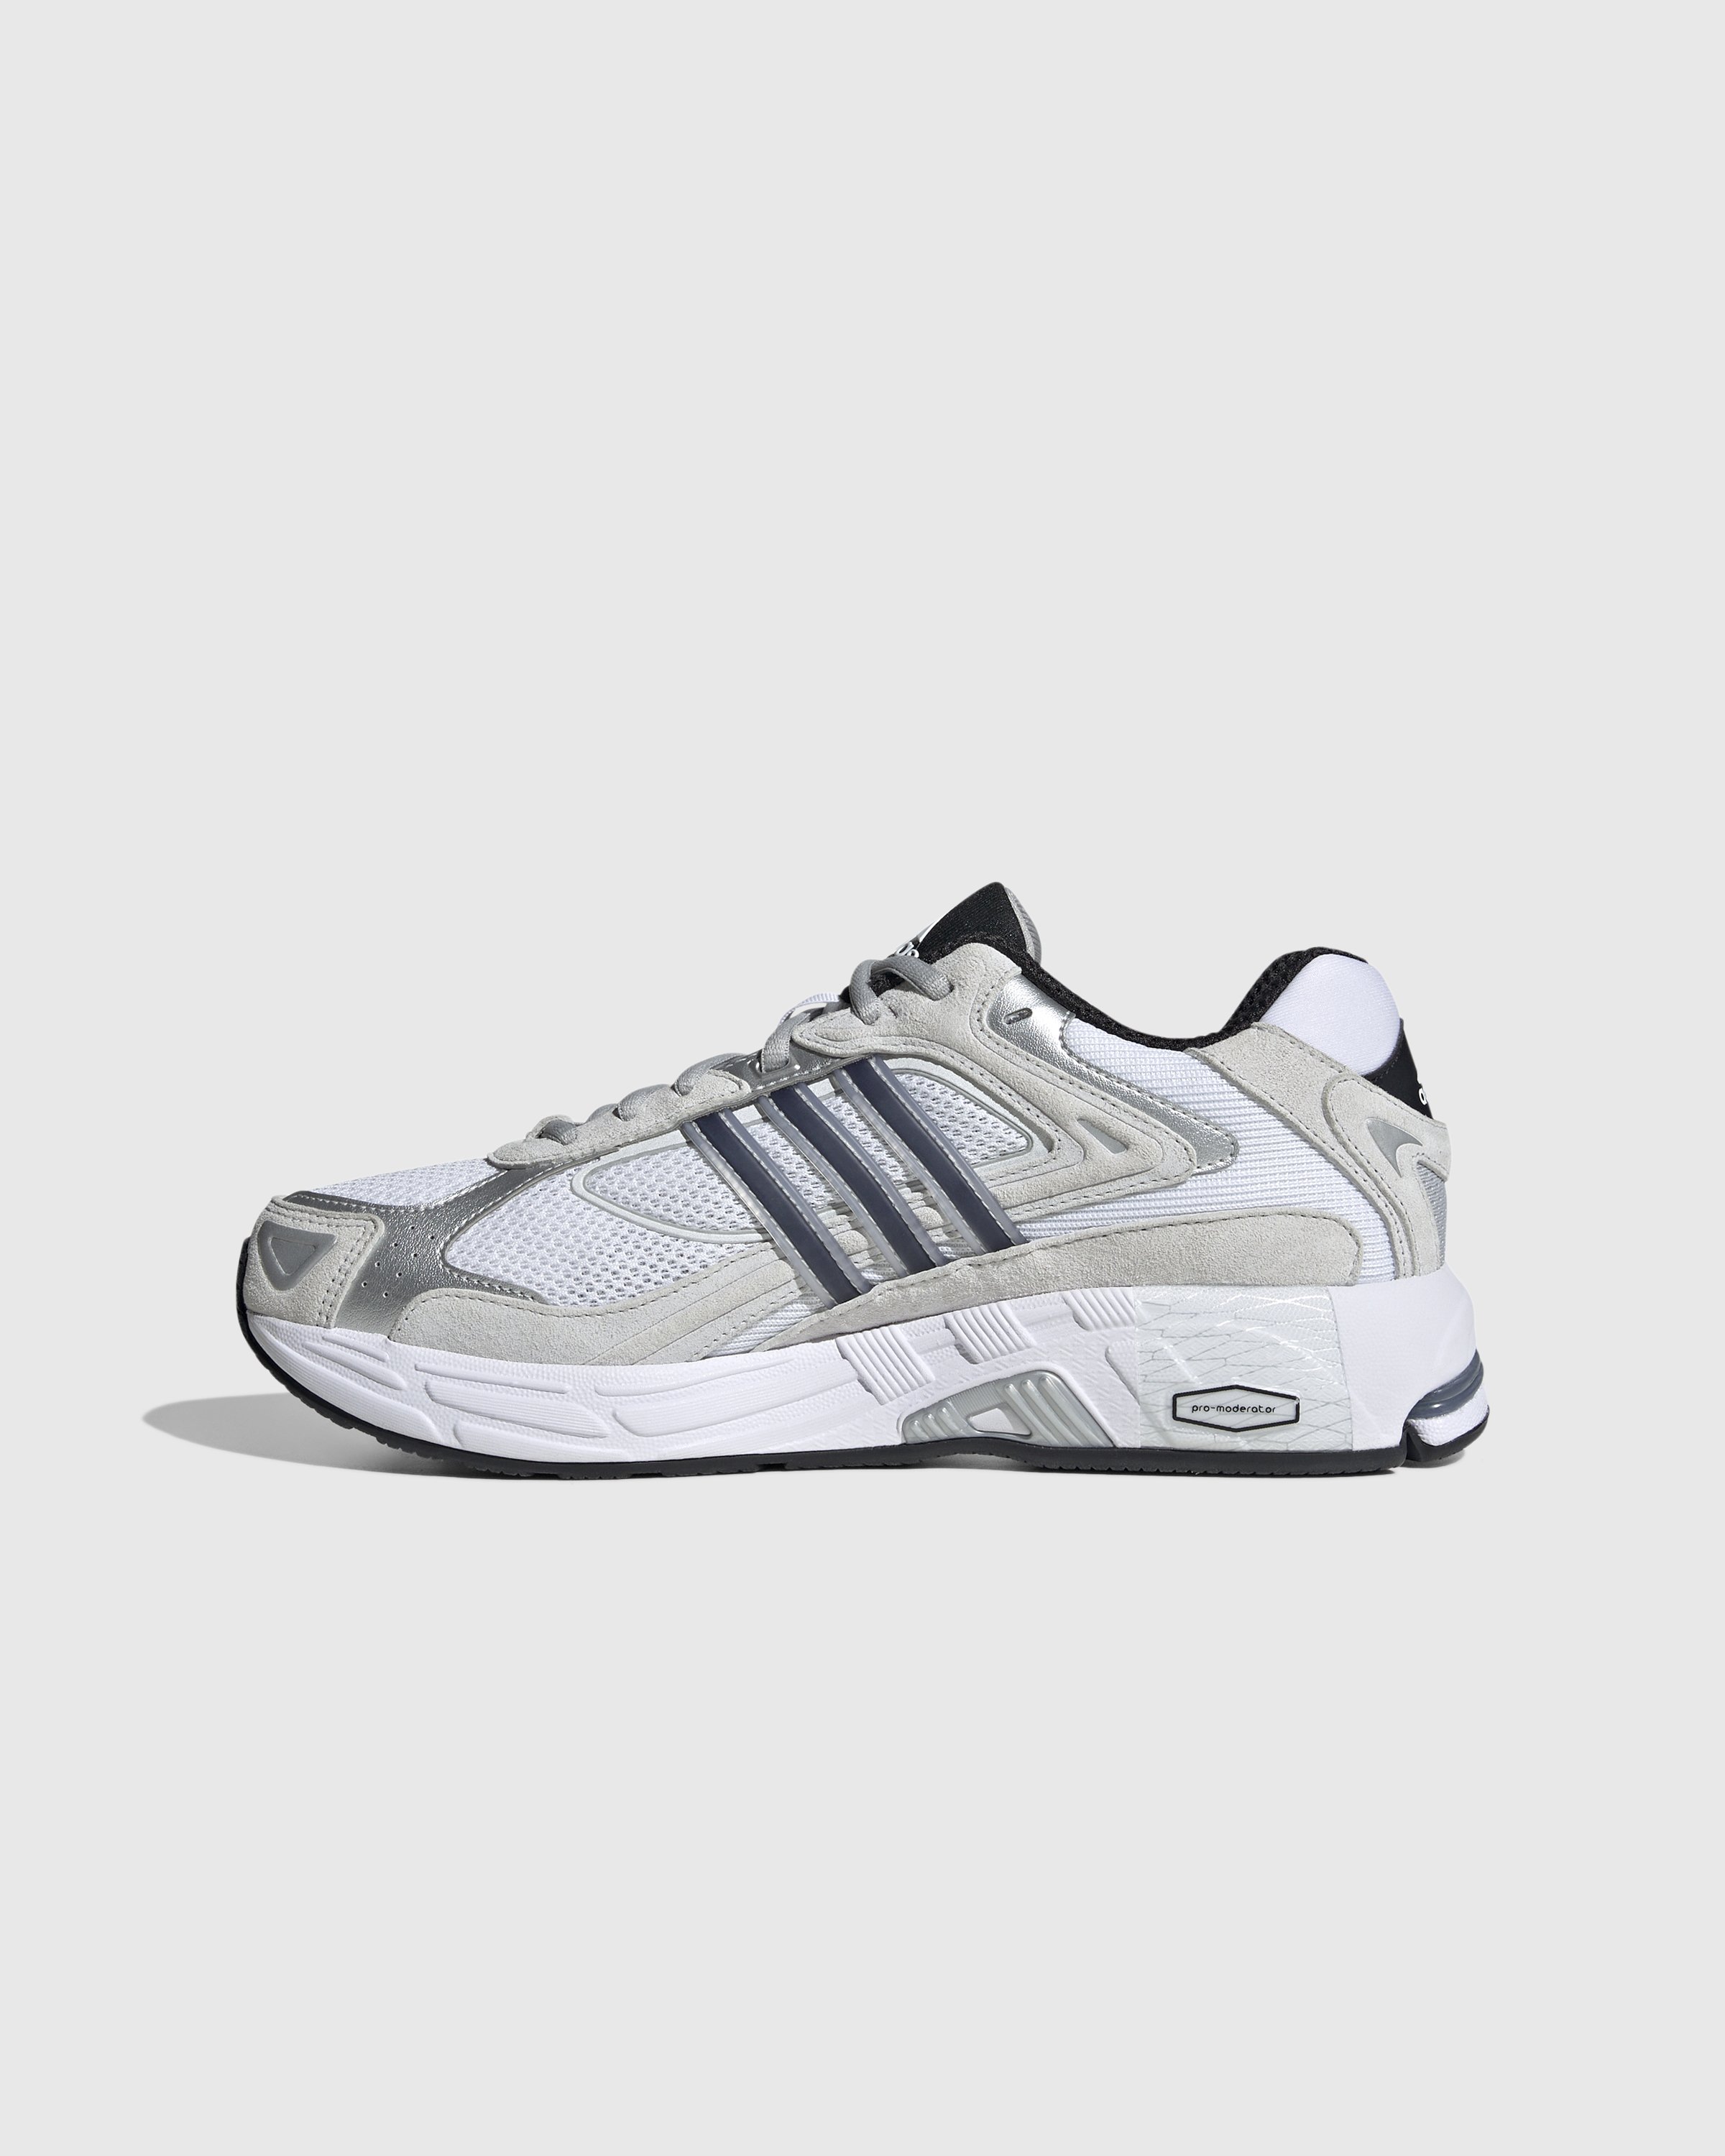 Adidas - Response CL White/Black - Footwear - White - Image 2